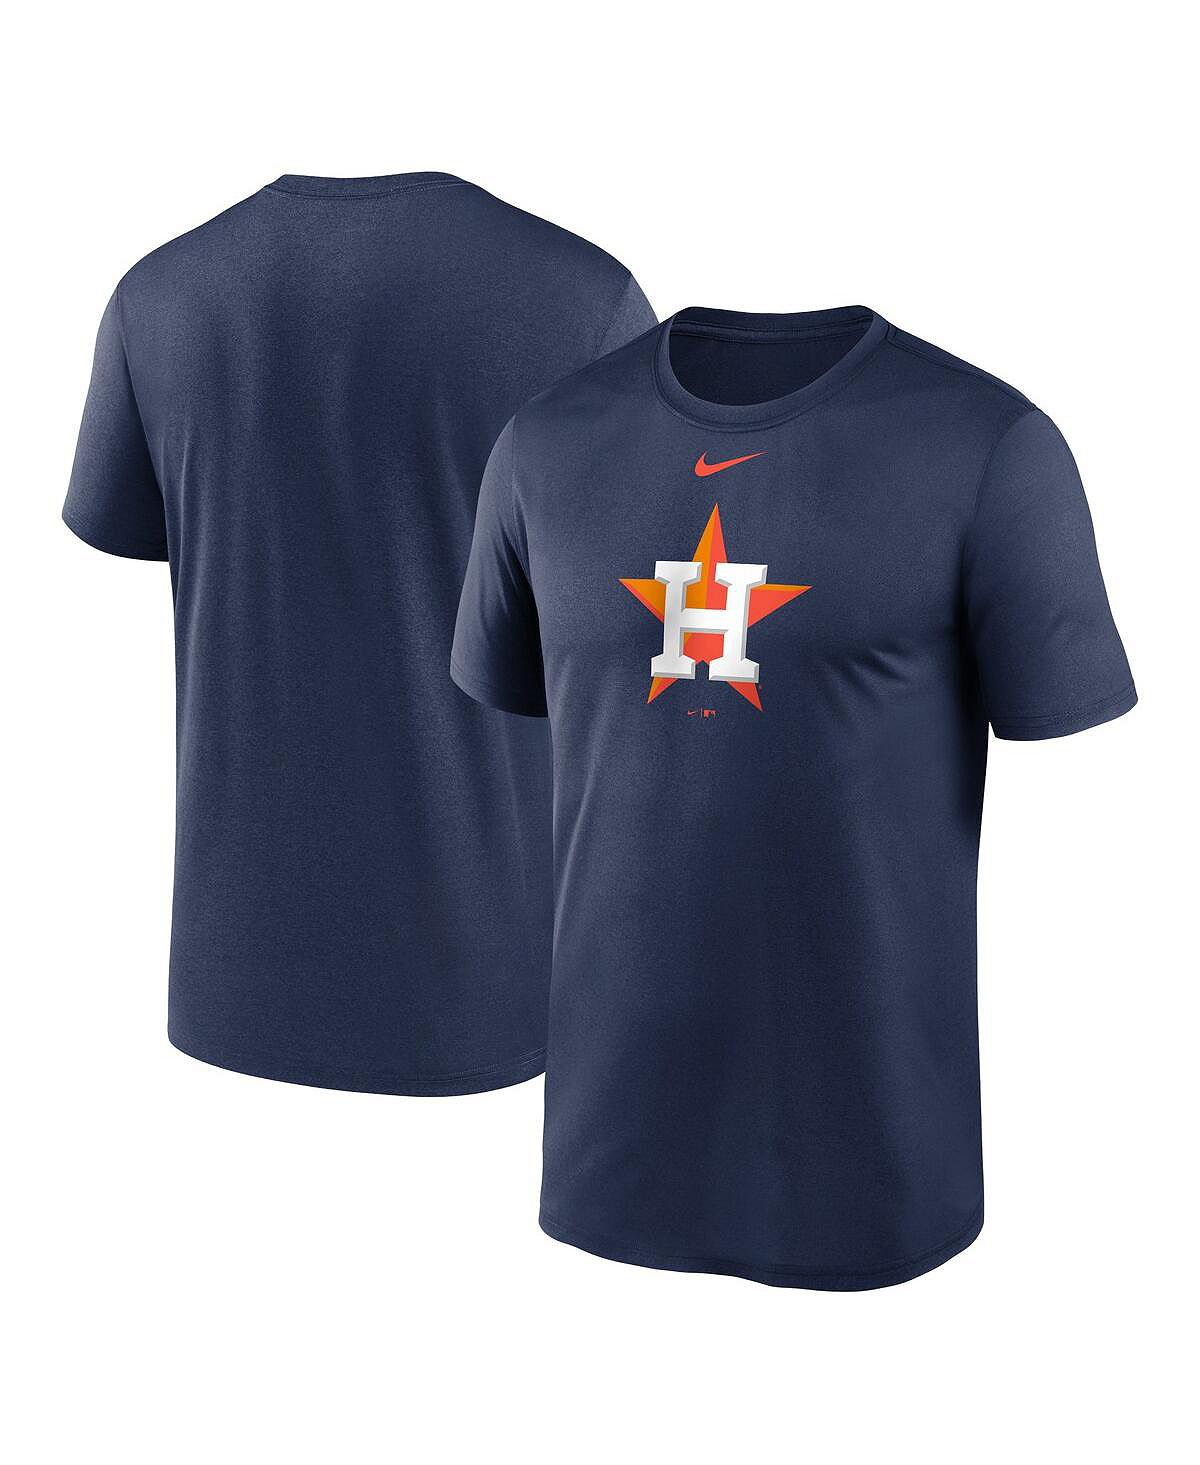 Мужская темно-синяя футболка с логотипом Houston Astros New Legend Nike